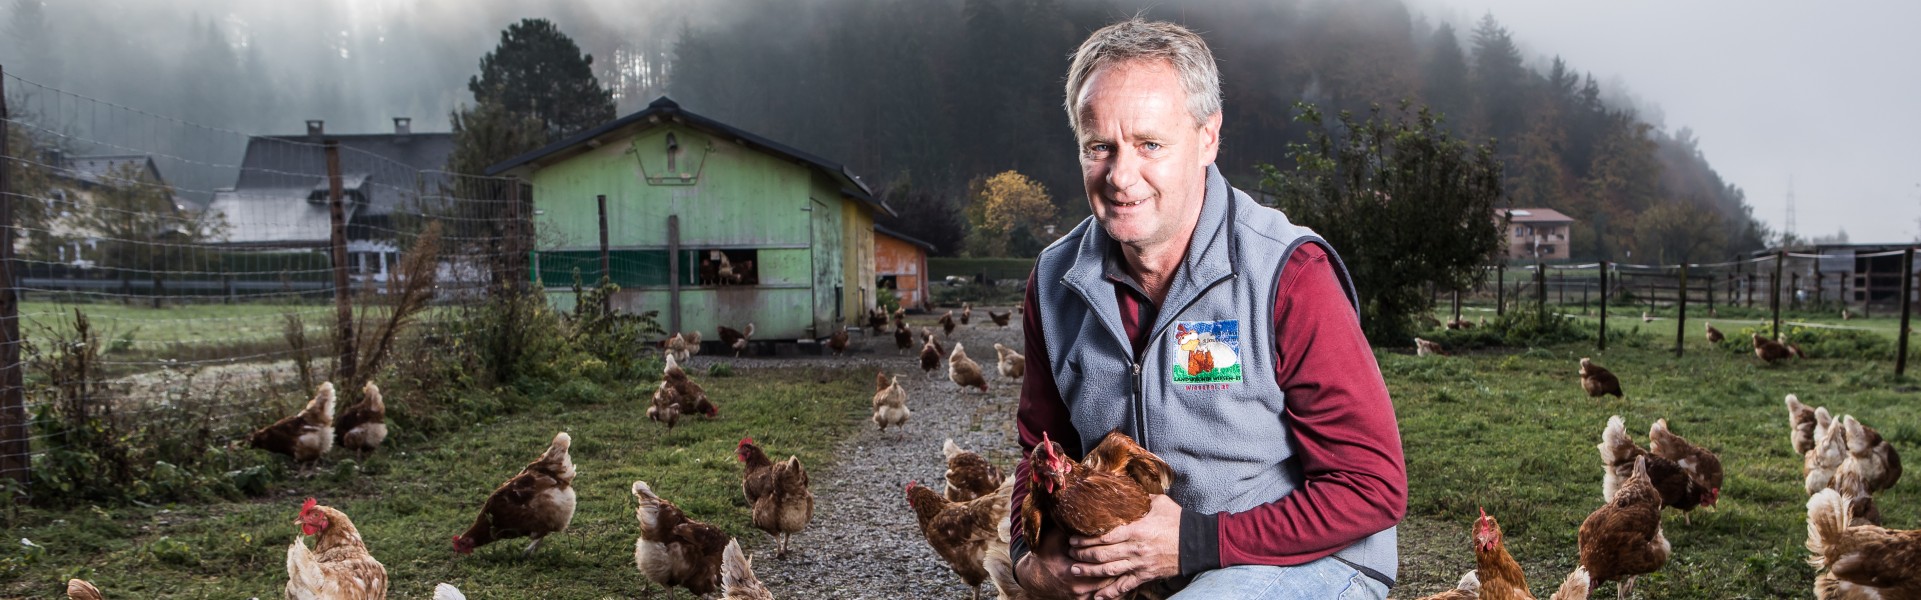 Martin Gfrerer im Hof mit seinen Hühnern